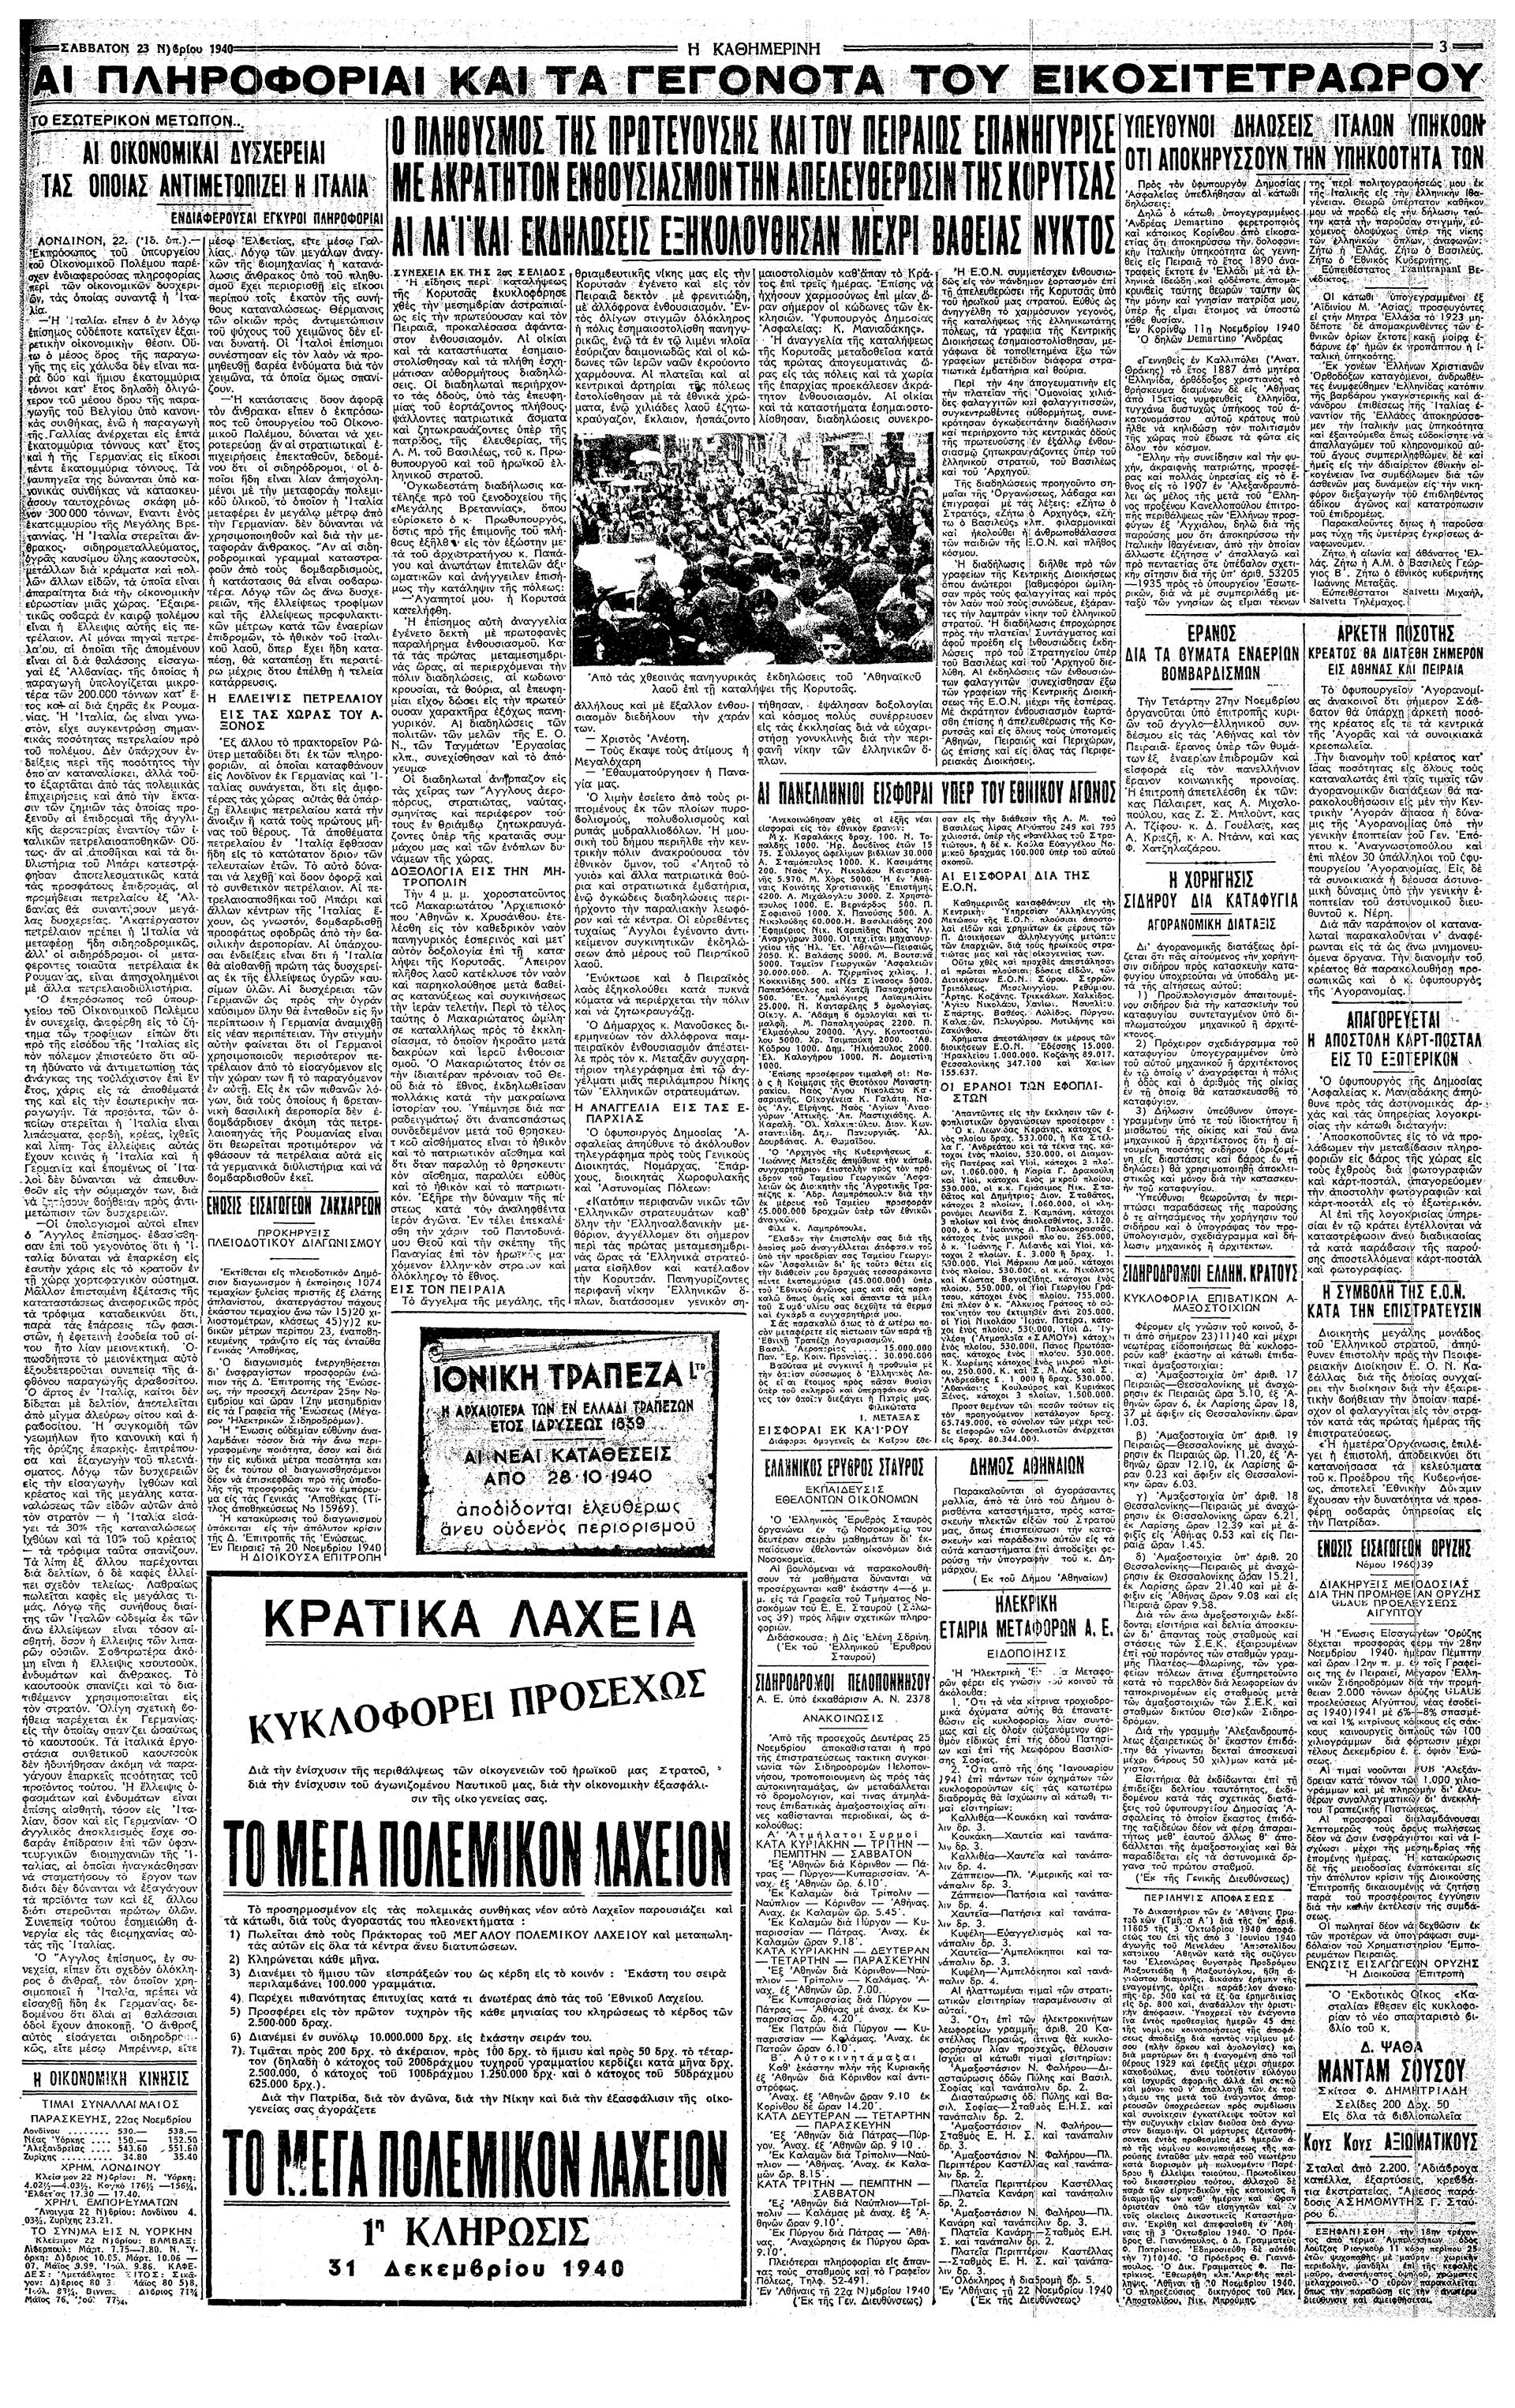 Σαν σήμερα: 22 Νοεμβρίου 1940 – Η απελευθέρωση της Κορυτσάς-4